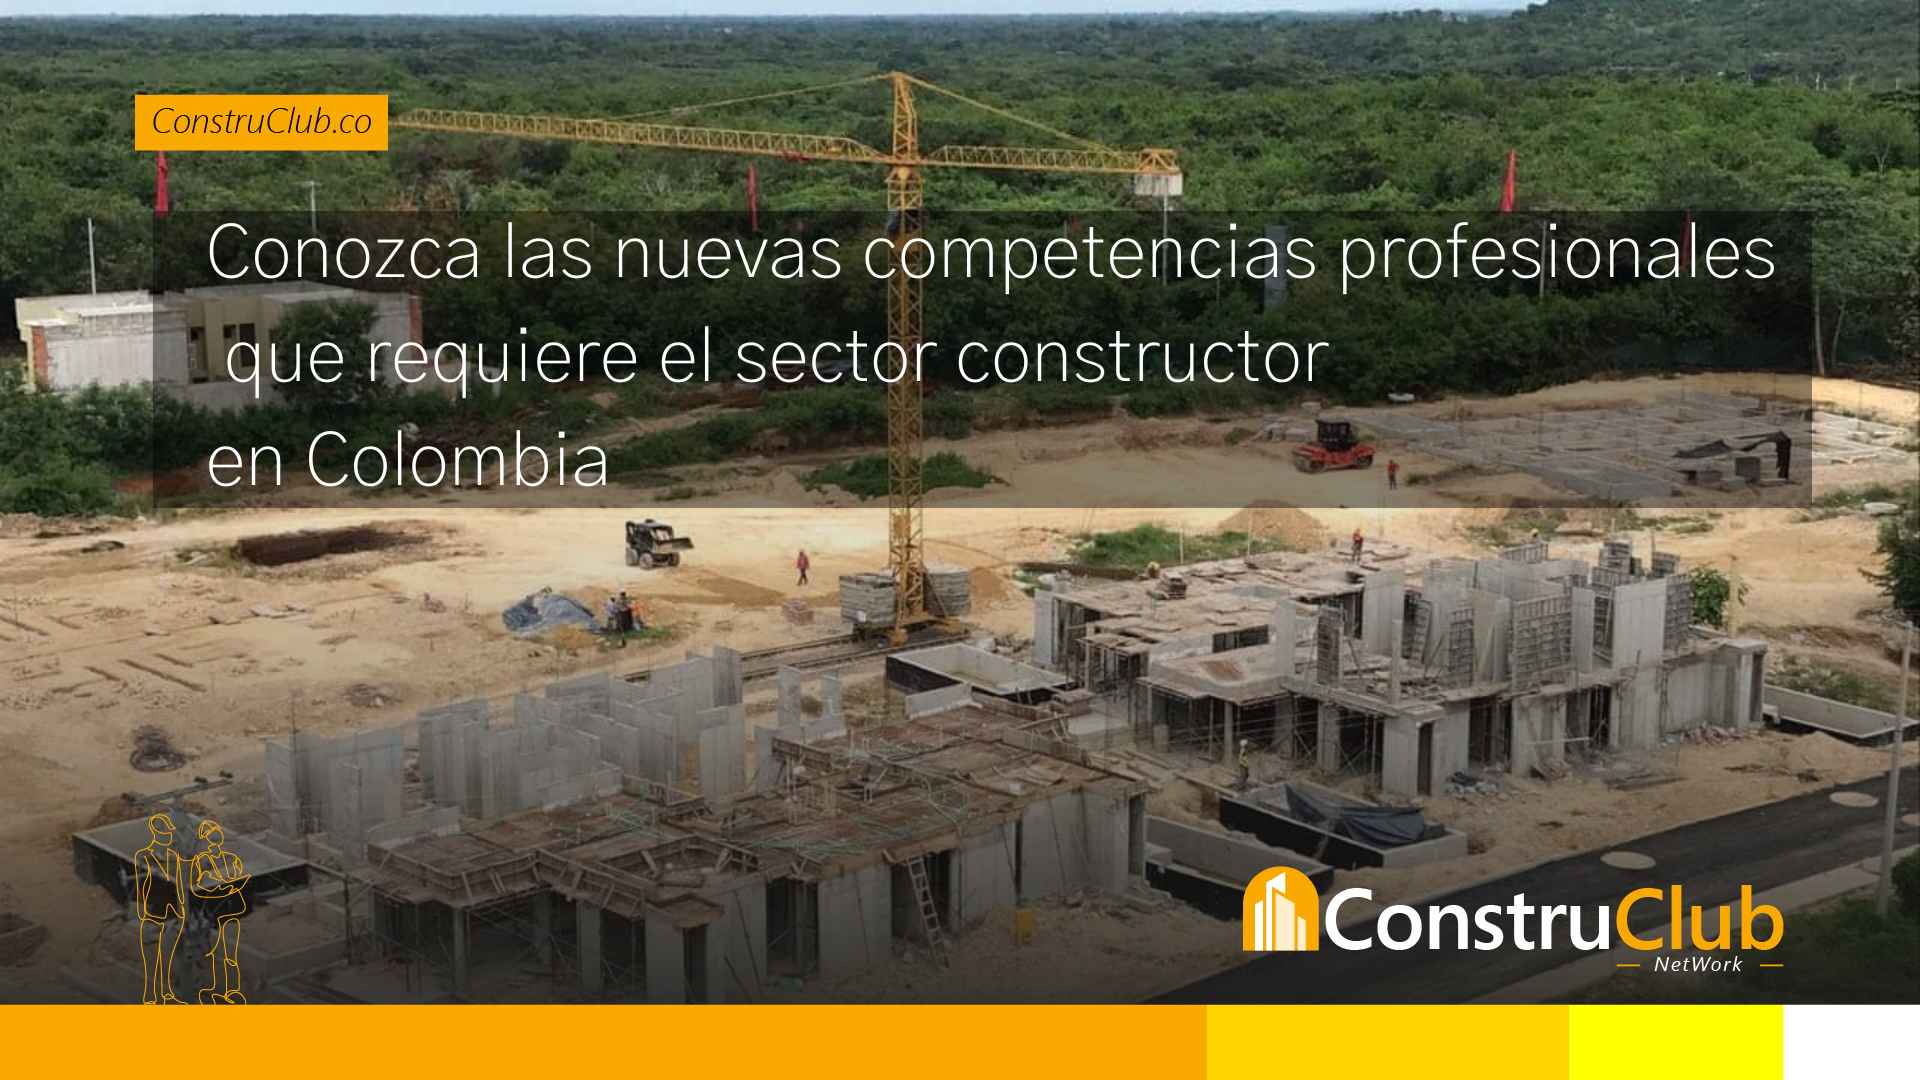 Conozca las nuevas competencias profesionales del sector constructor